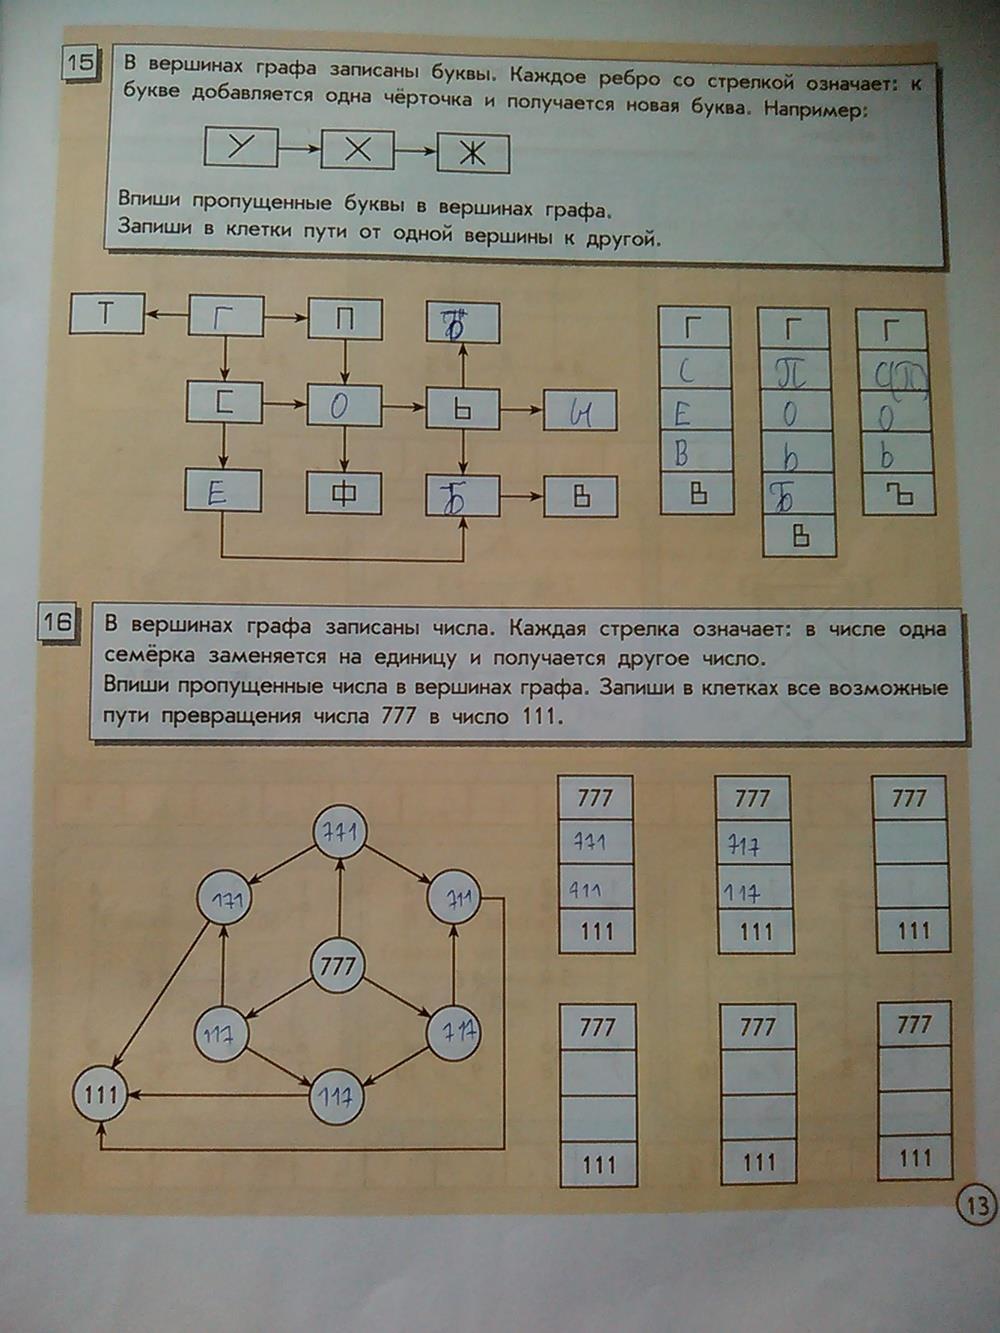 ГДЗ Информатика 4 класс часть 2 страница 13 Горячев, Горина